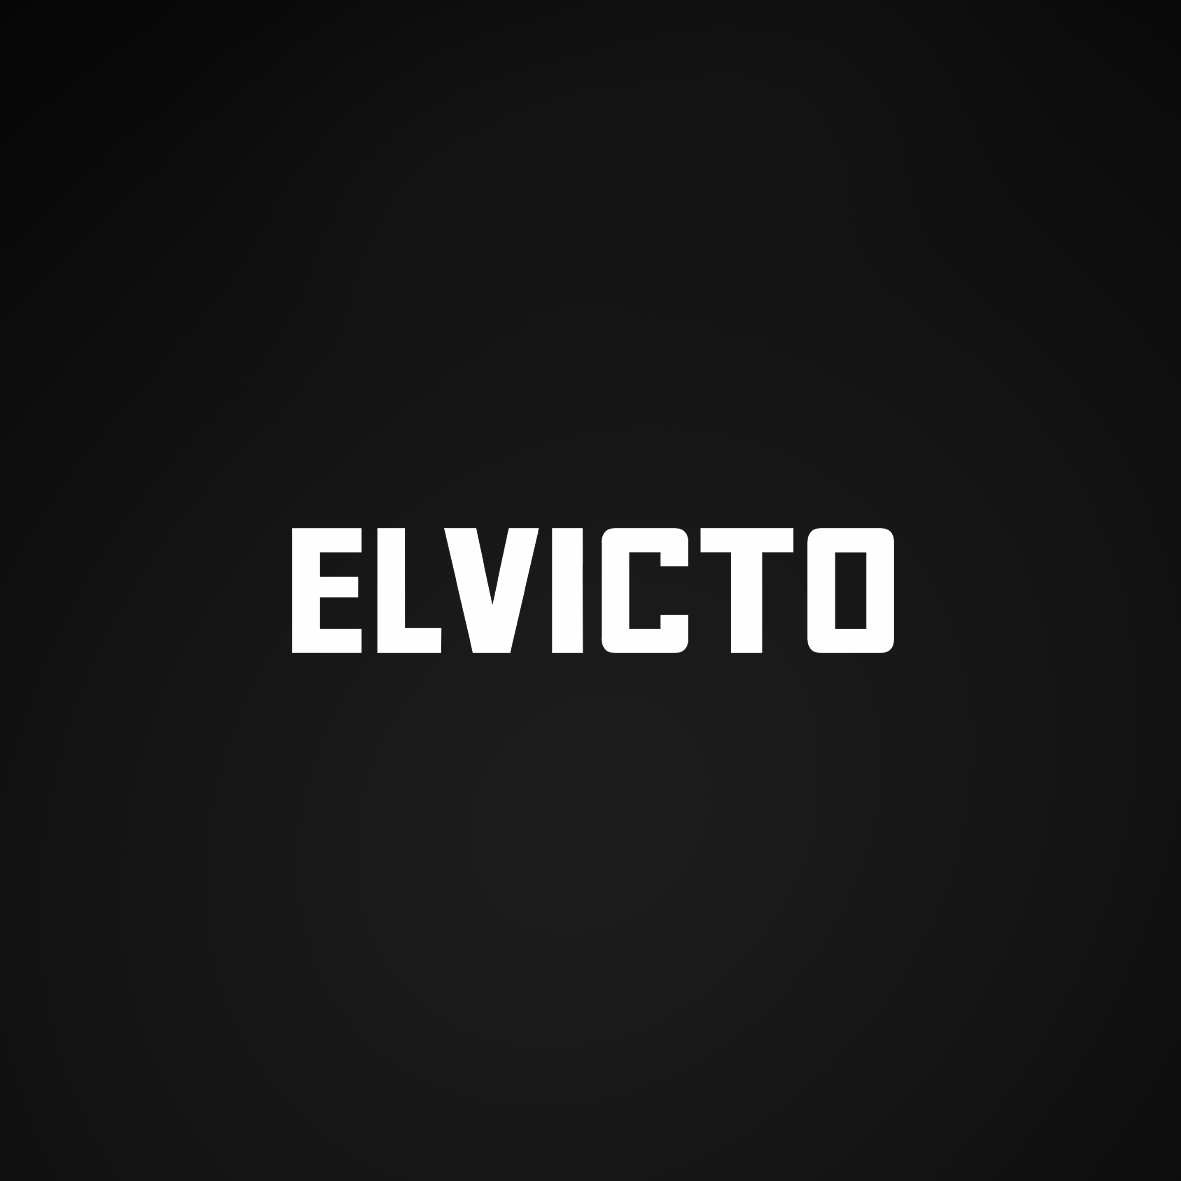 Elvicto